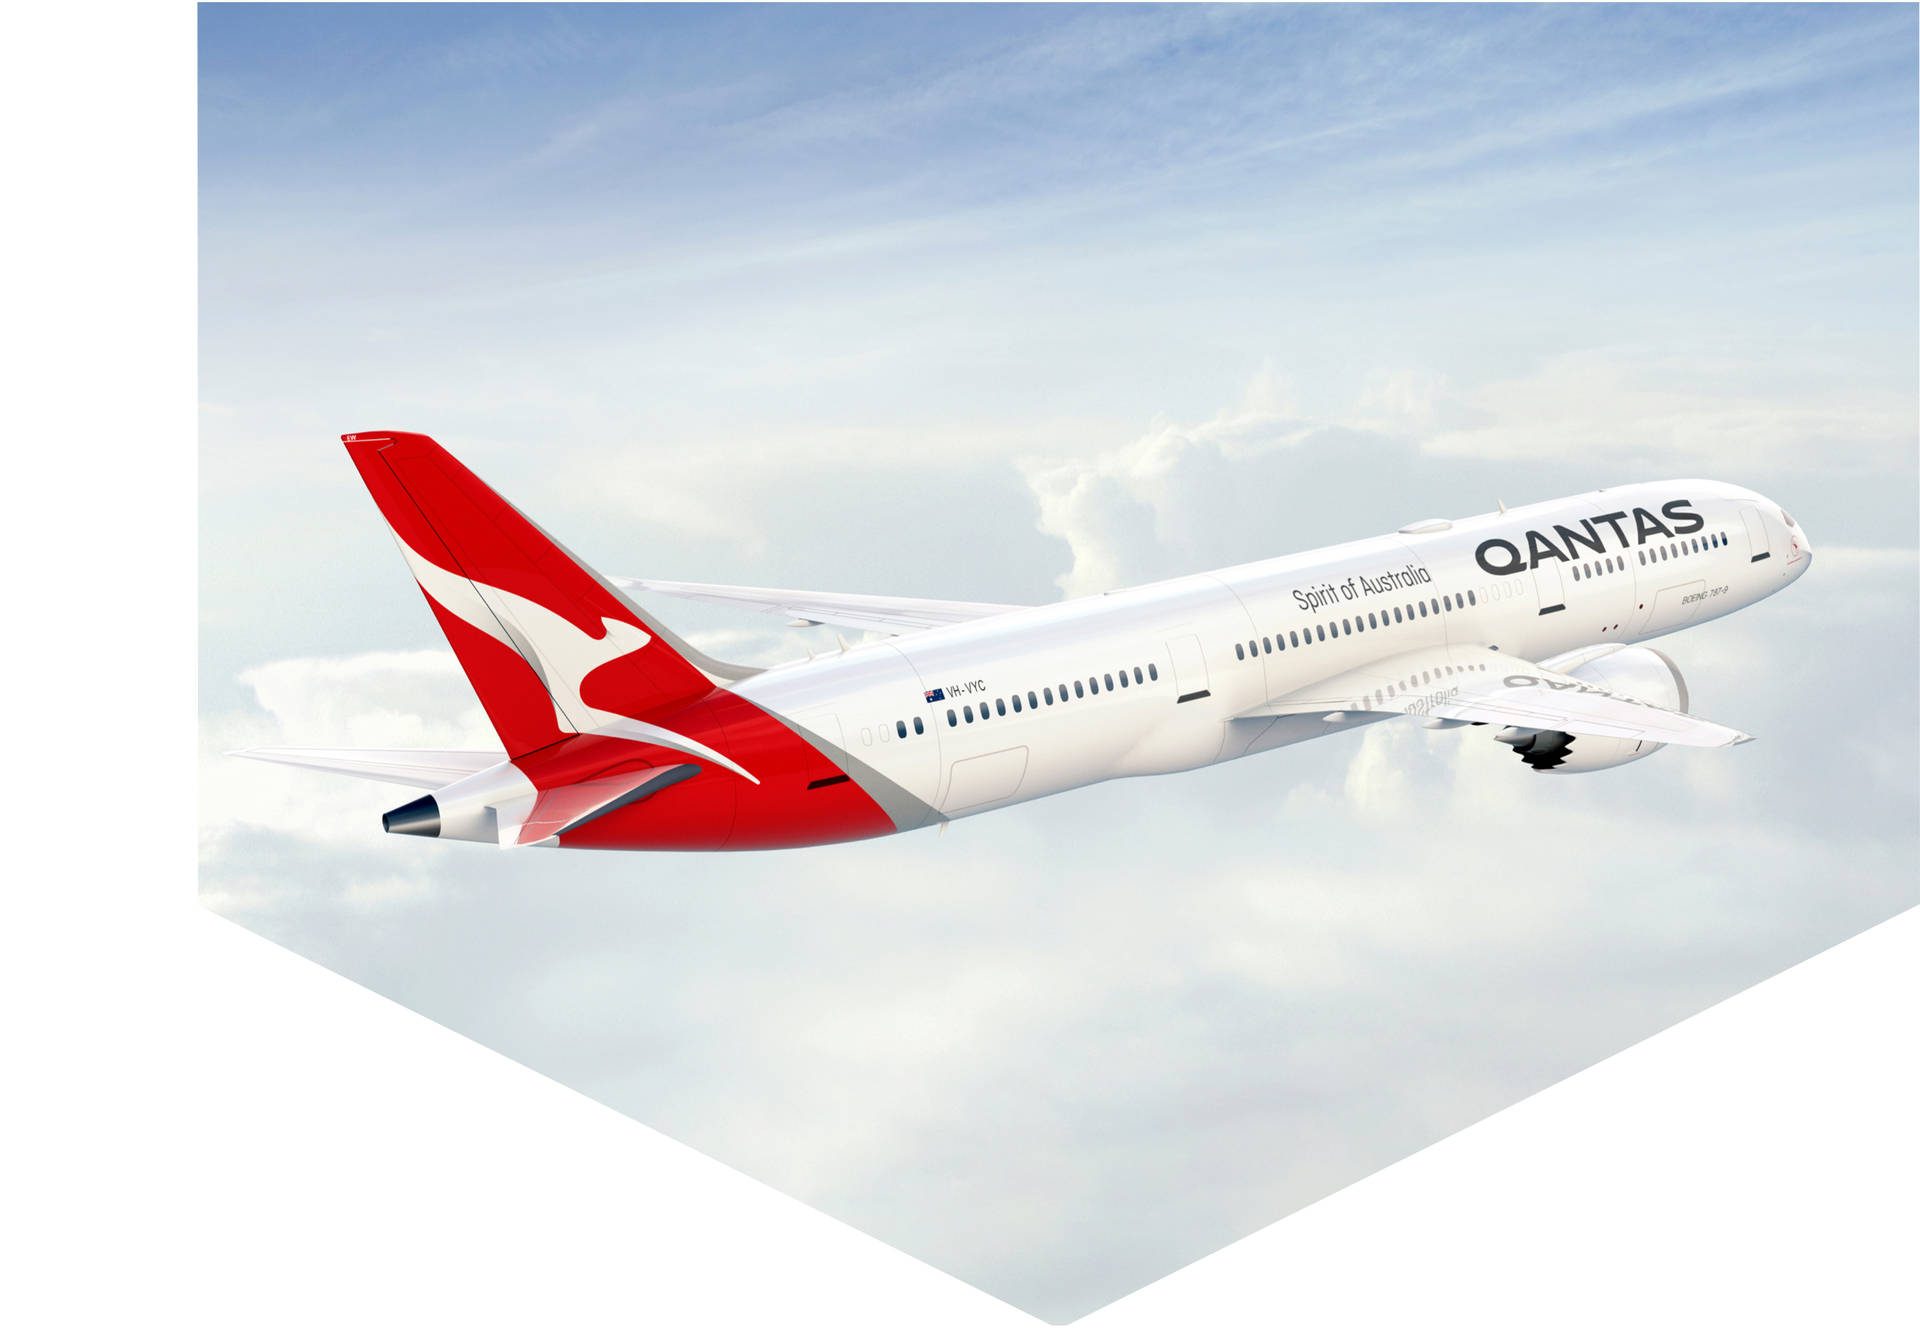 Qantasflygplan Vitt Estetiskt Mönster (computer/mobile Wallpaper) Wallpaper